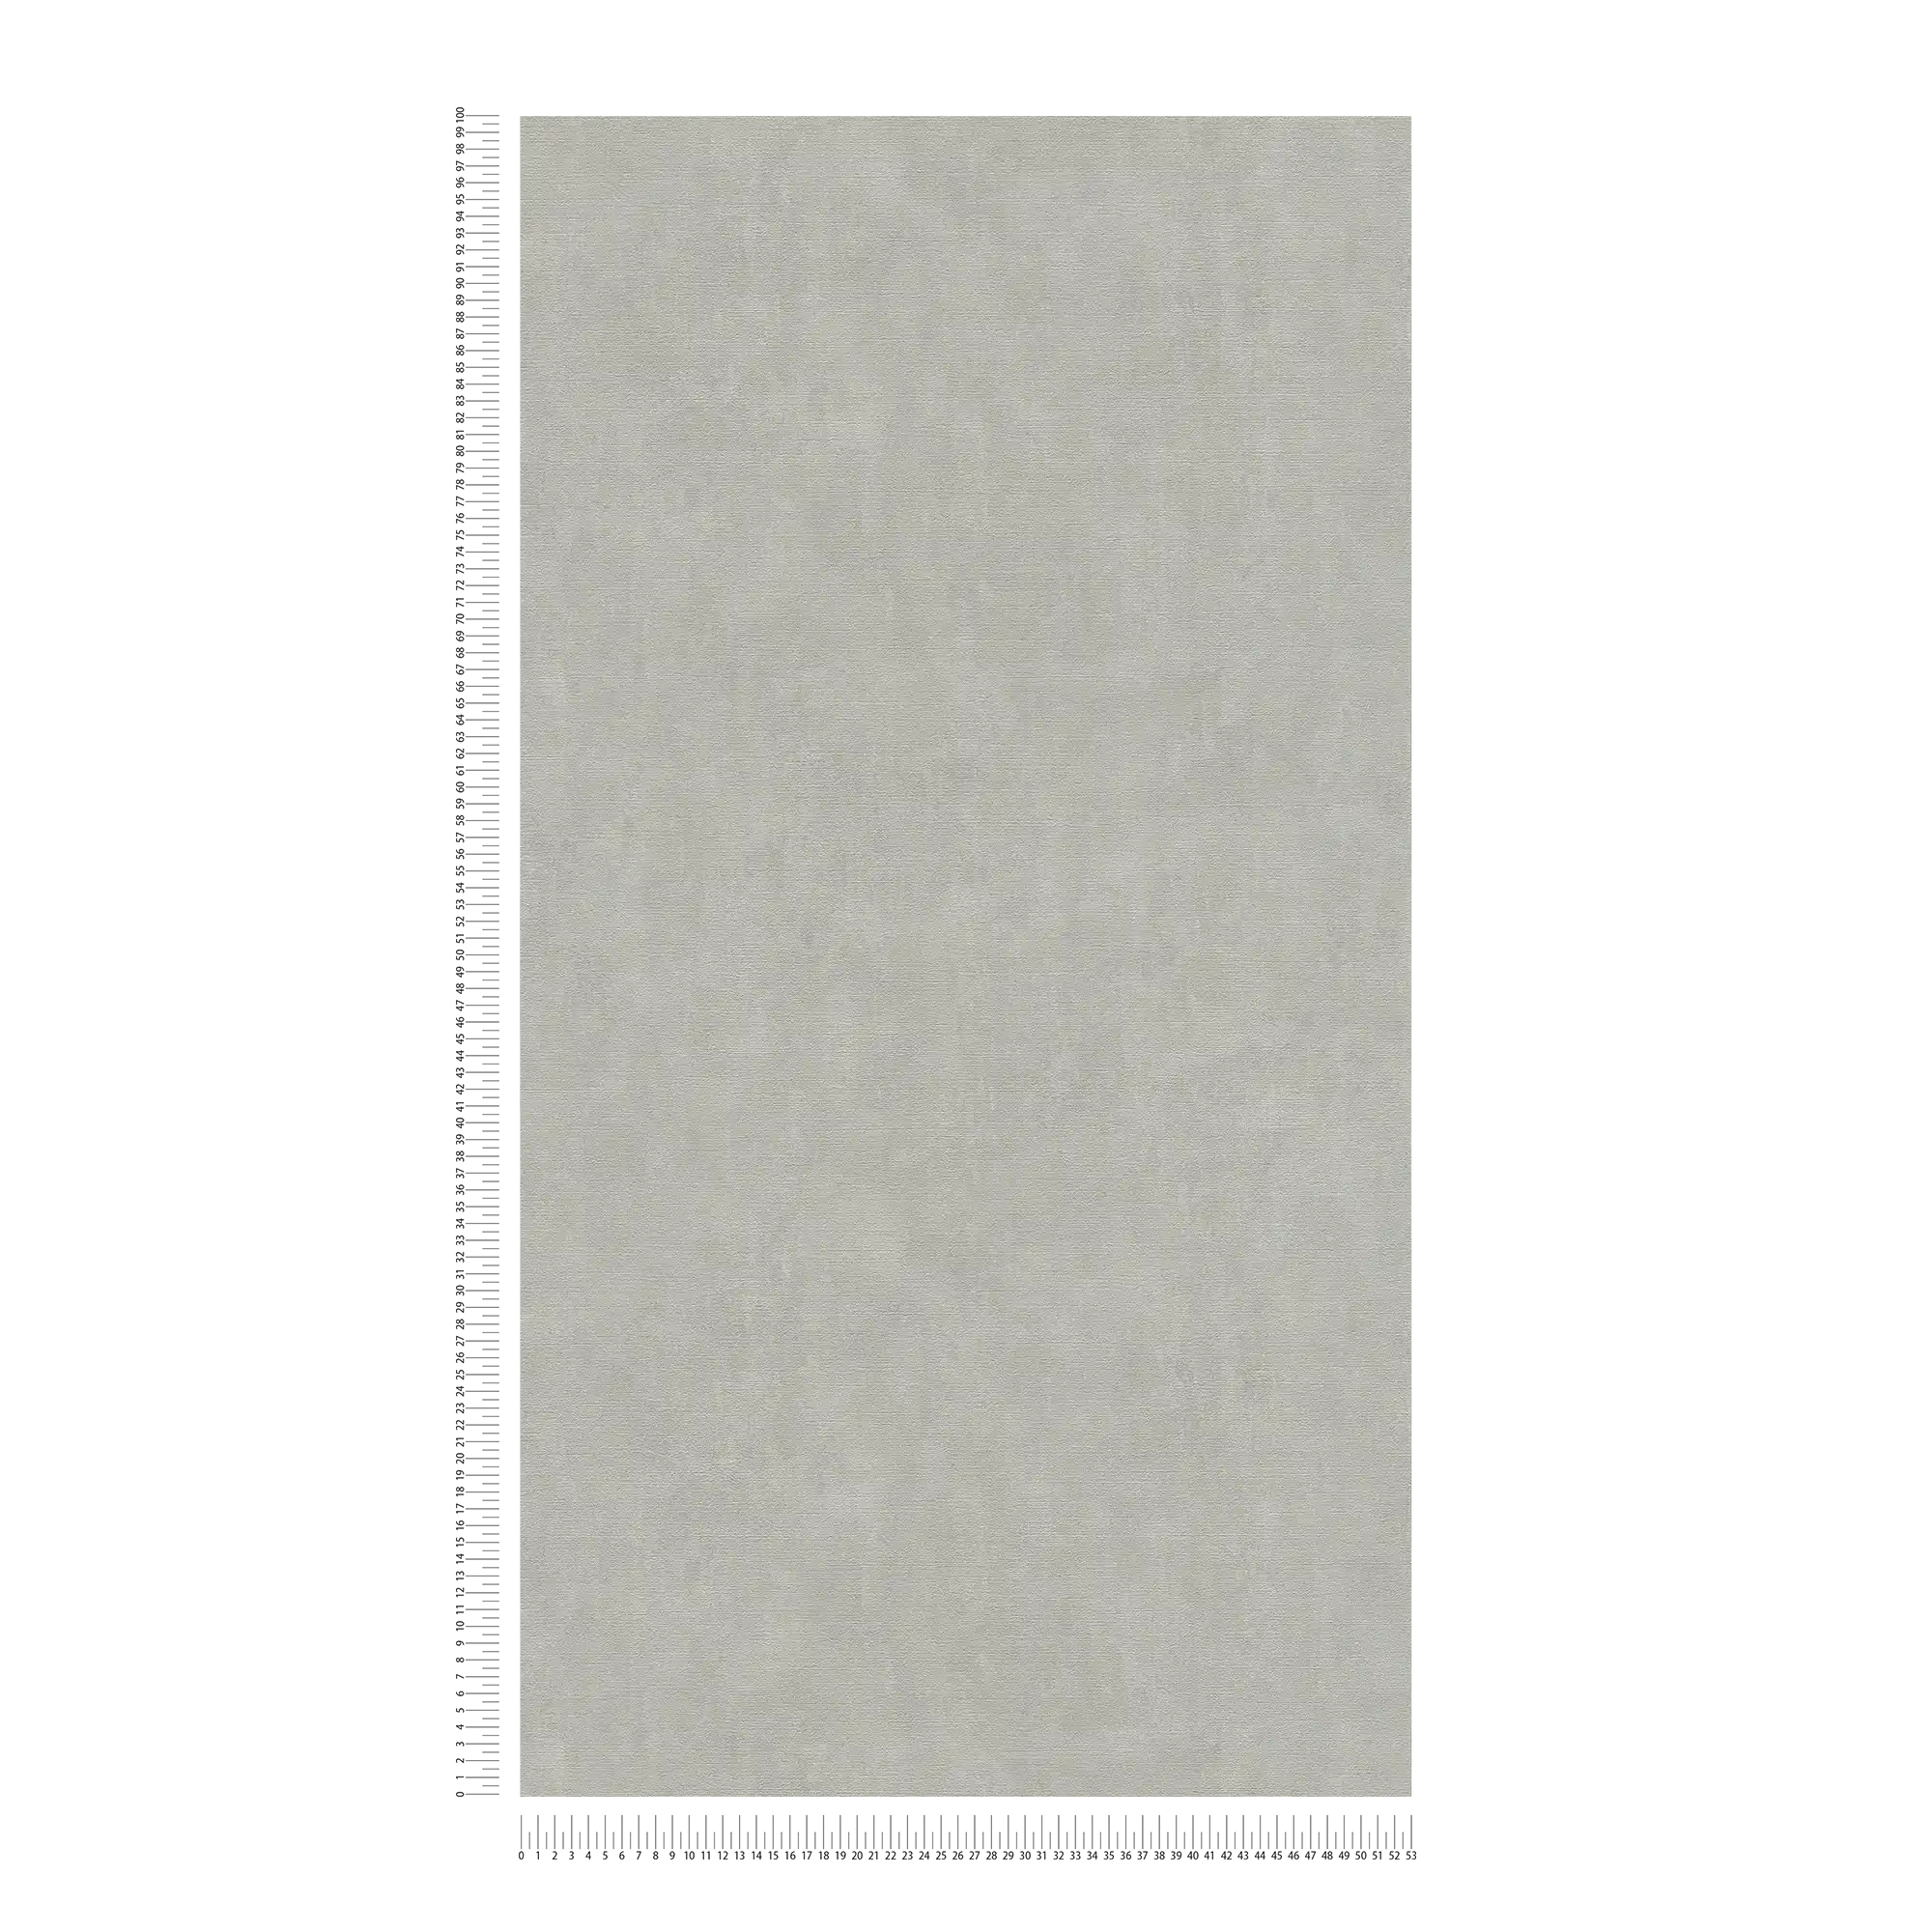             Papier peint gris beige avec aspect crépi style vintage
        